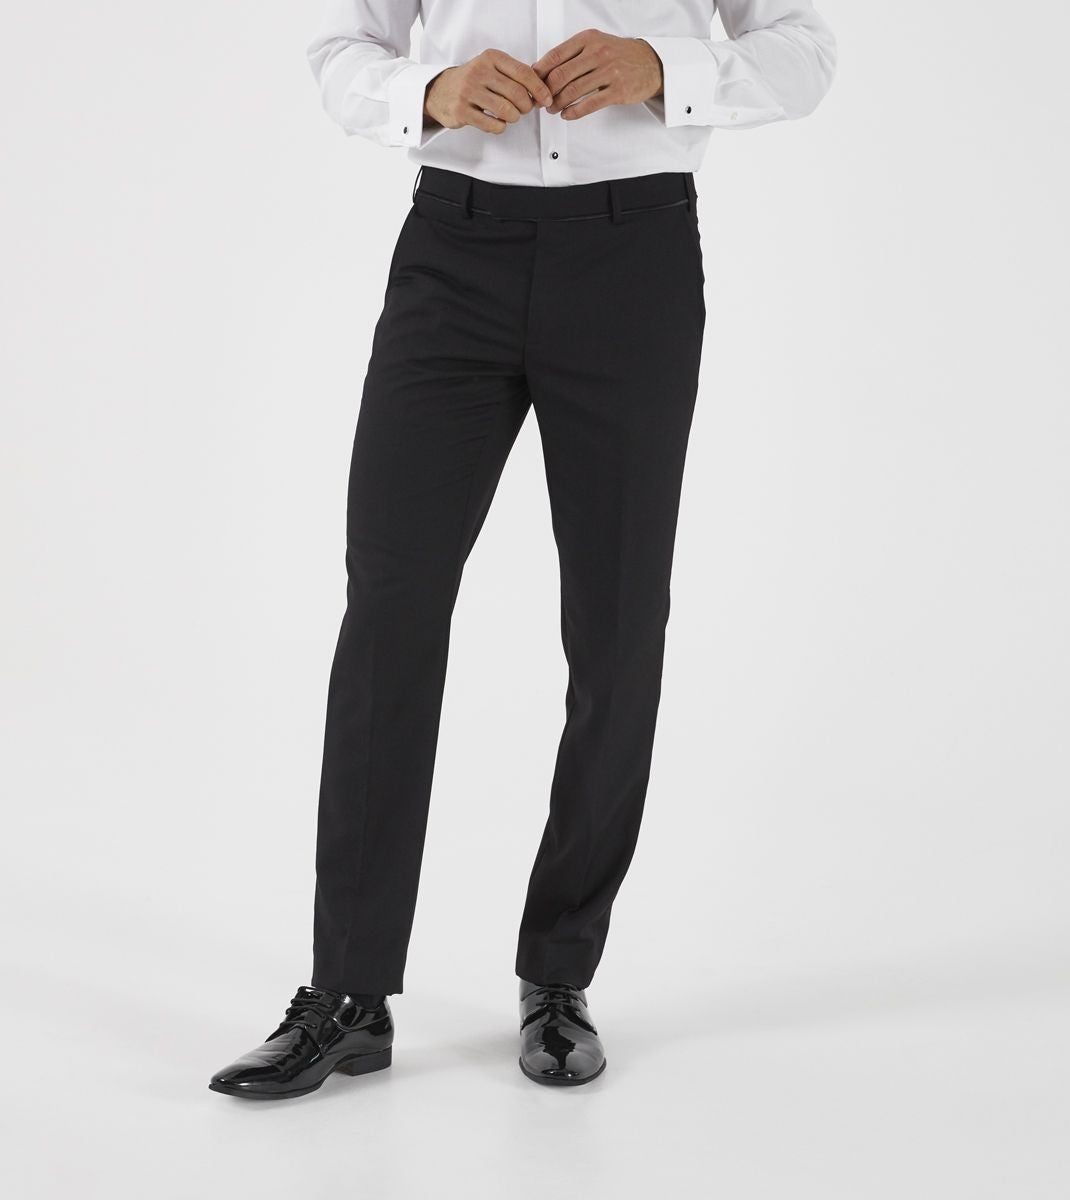 Skopes Dinner Suit Trousers Black Short Length